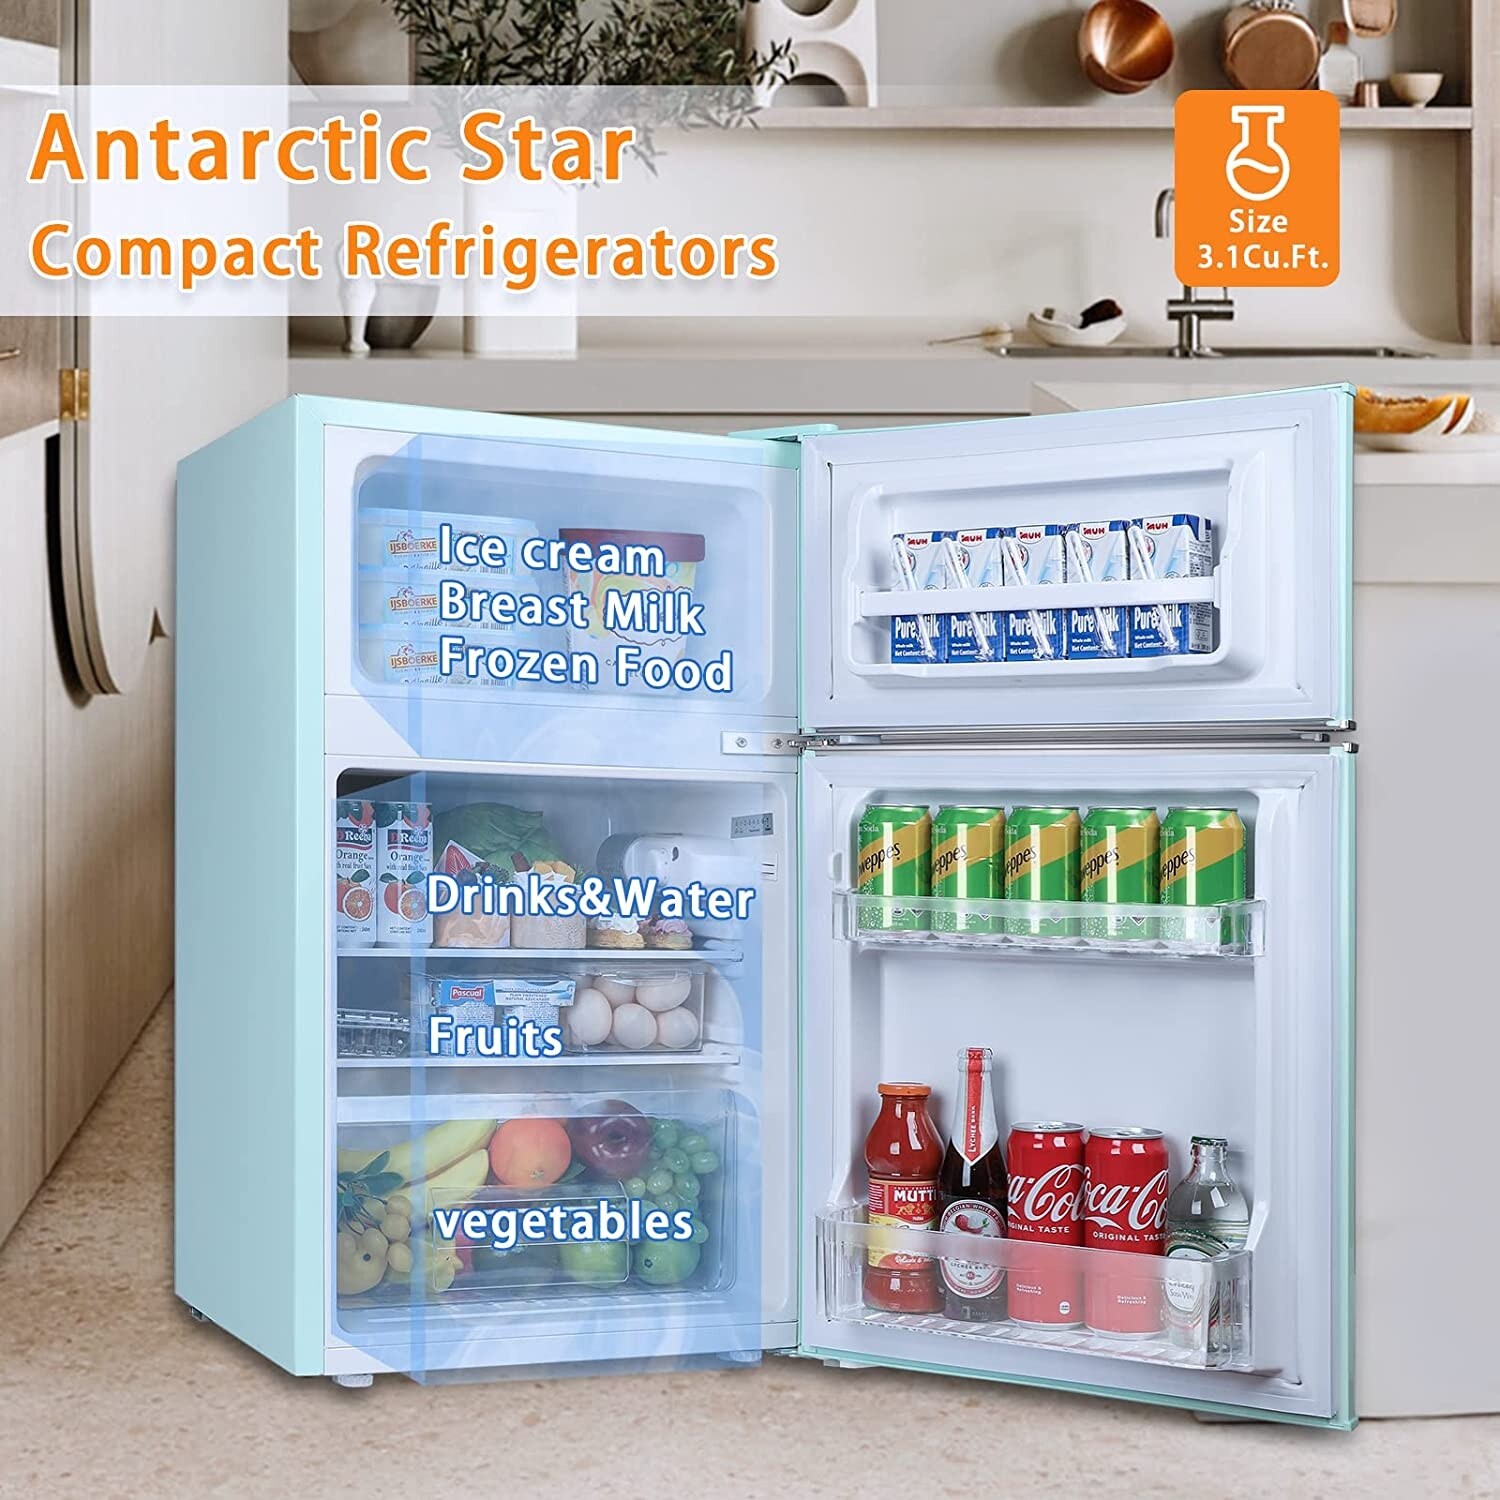 Antarctic Star Mini Upright Freezer -1.2 cu.ft Compact freezer